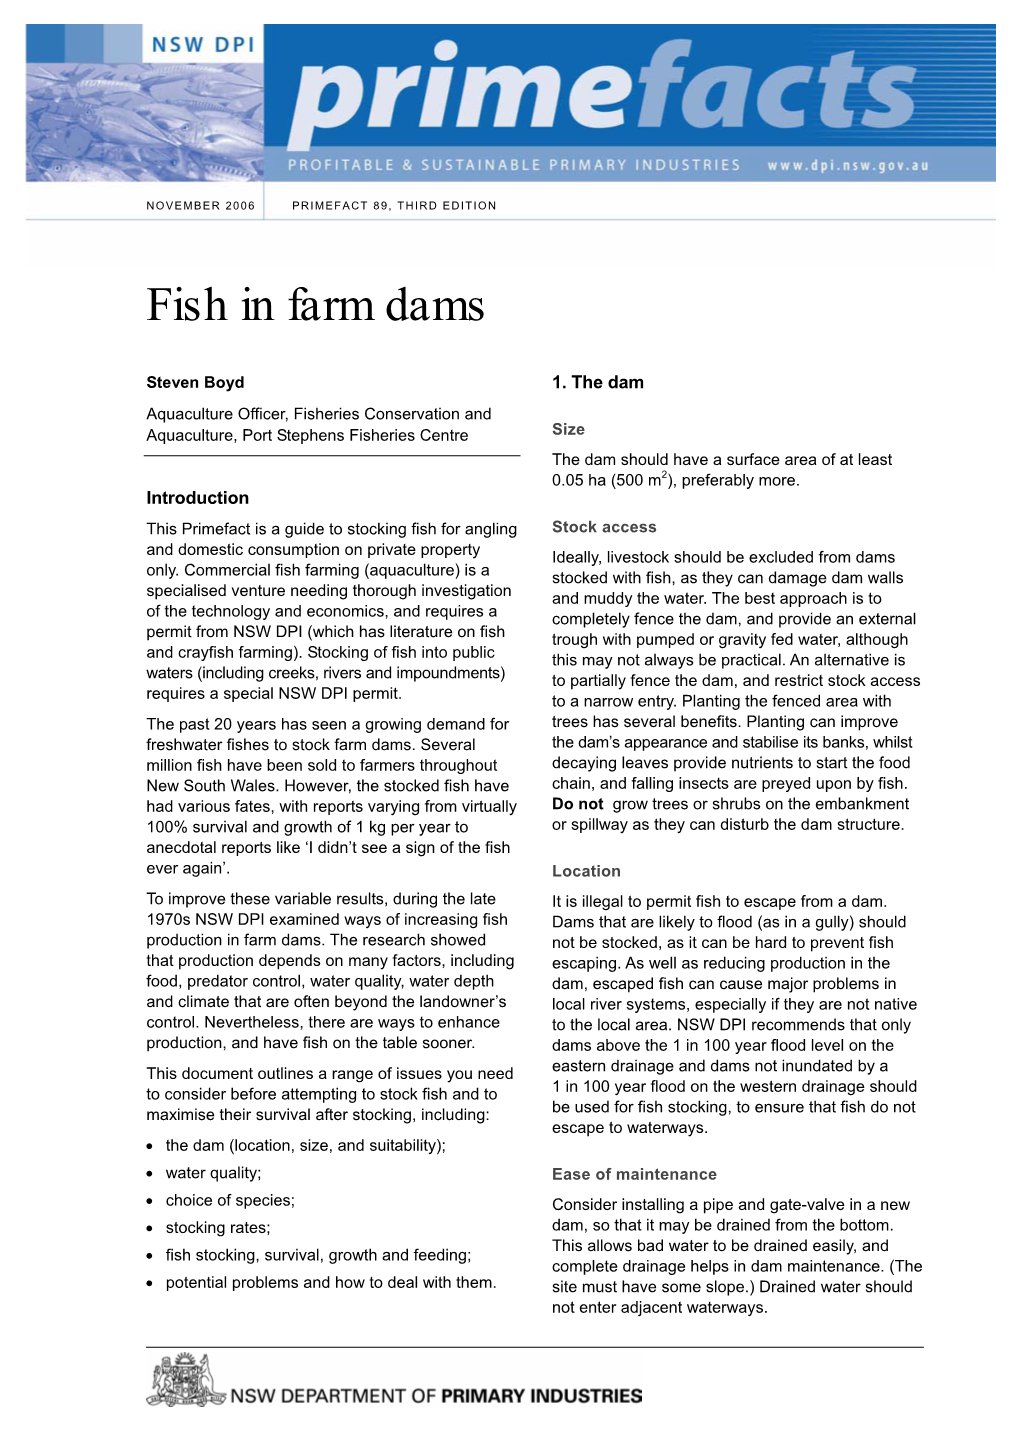 Fish in Farm Dams